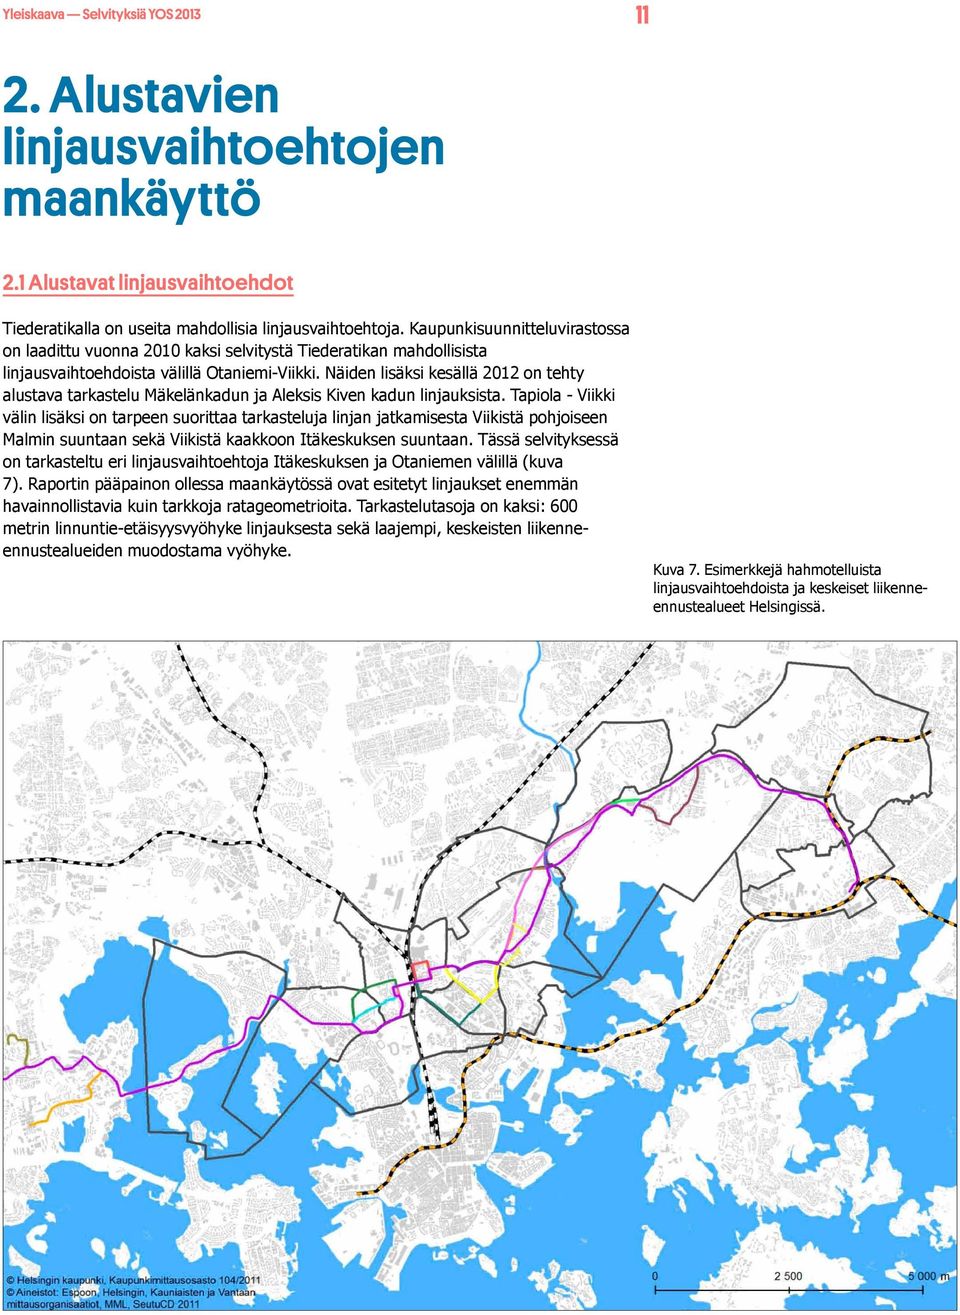 Näiden lisäksi kesällä 2012 on tehty alustava tarkastelu Mäkelänkadun ja Aleksis Kiven kadun linjauksista.